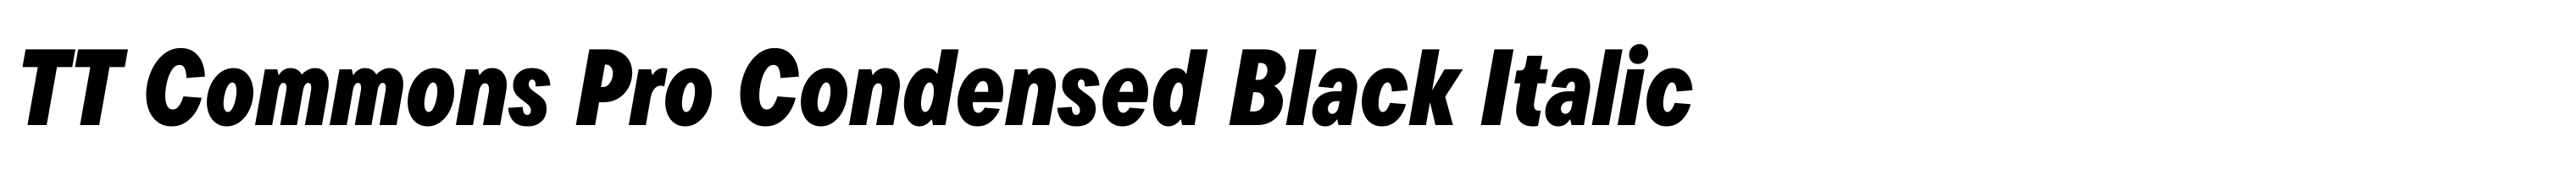 TT Commons Pro Condensed Black Italic